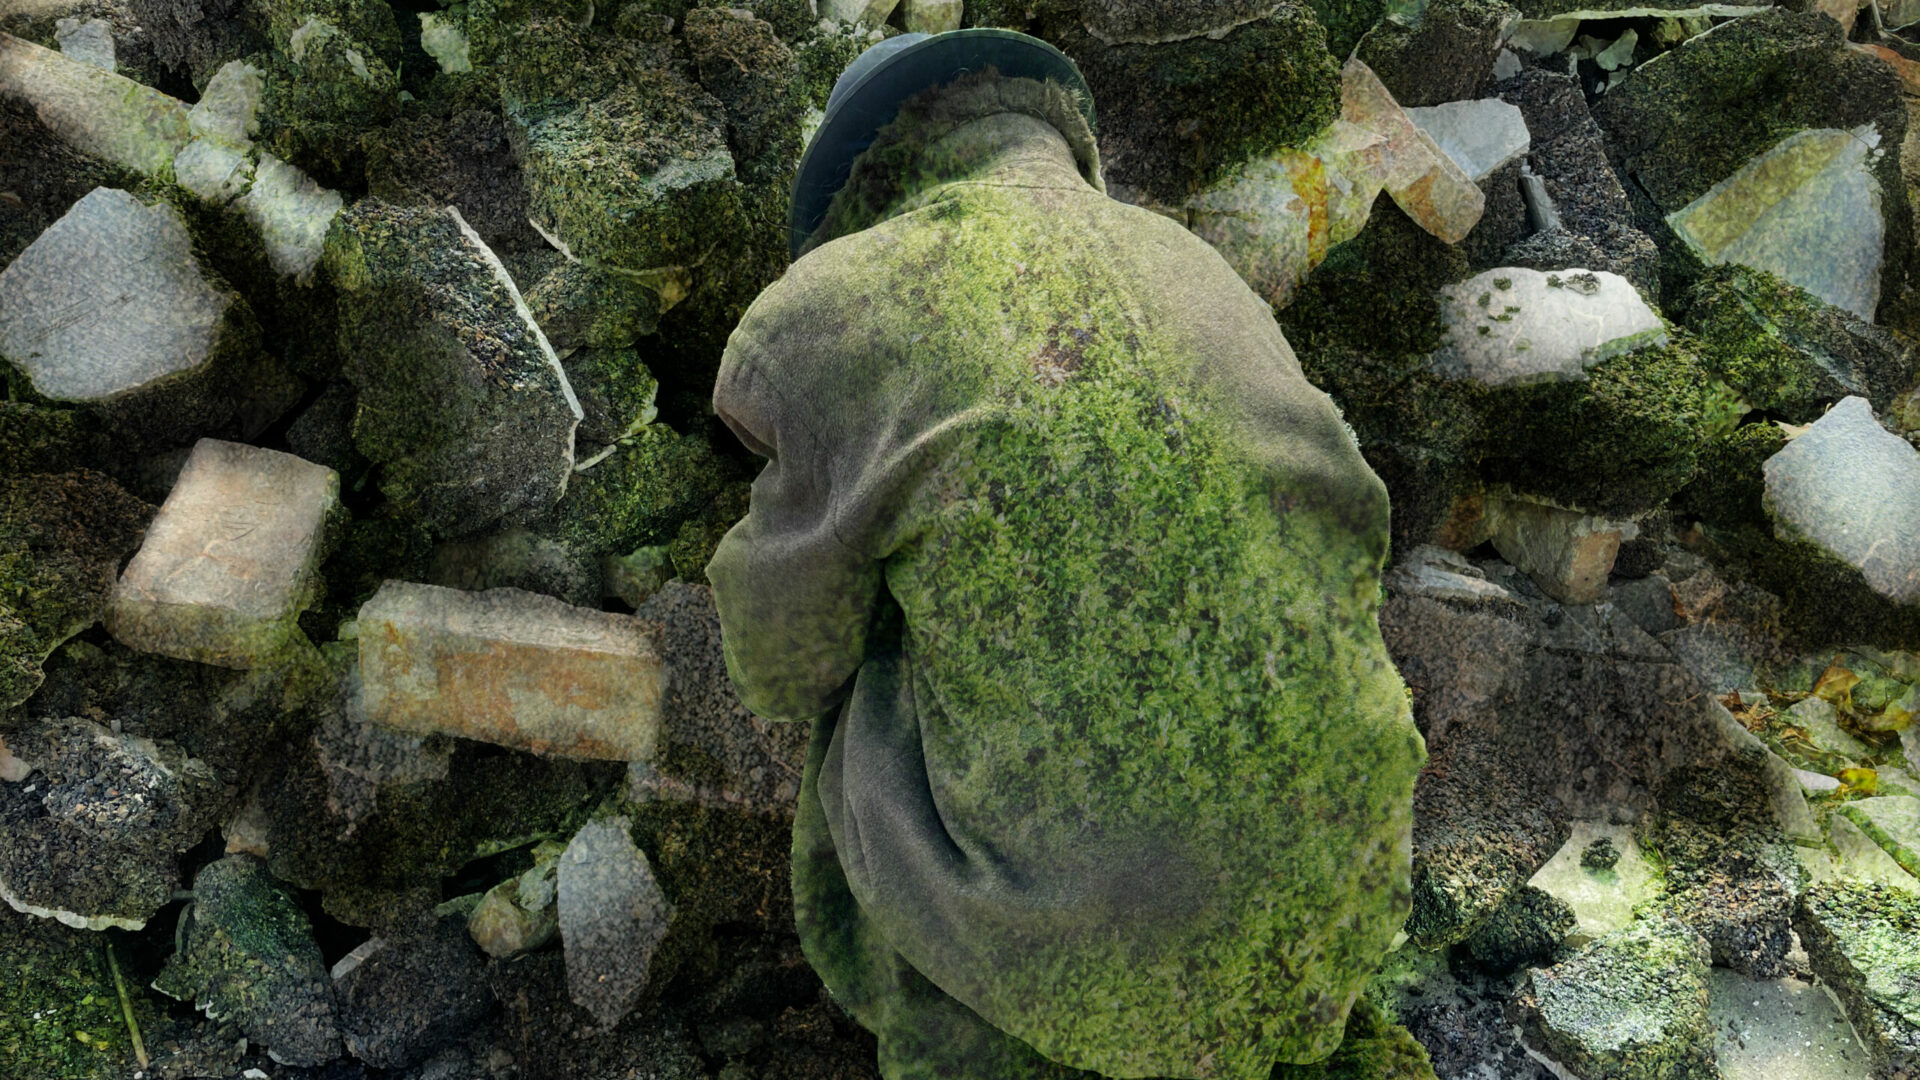 Szenenfoto einer Auffuehrung: Eine Person mit Filzmantel und Hut hockend vor einem Truemmerhaufen. Der Mantel und die Trümmer sind teilwese mit Moos bewachsen.